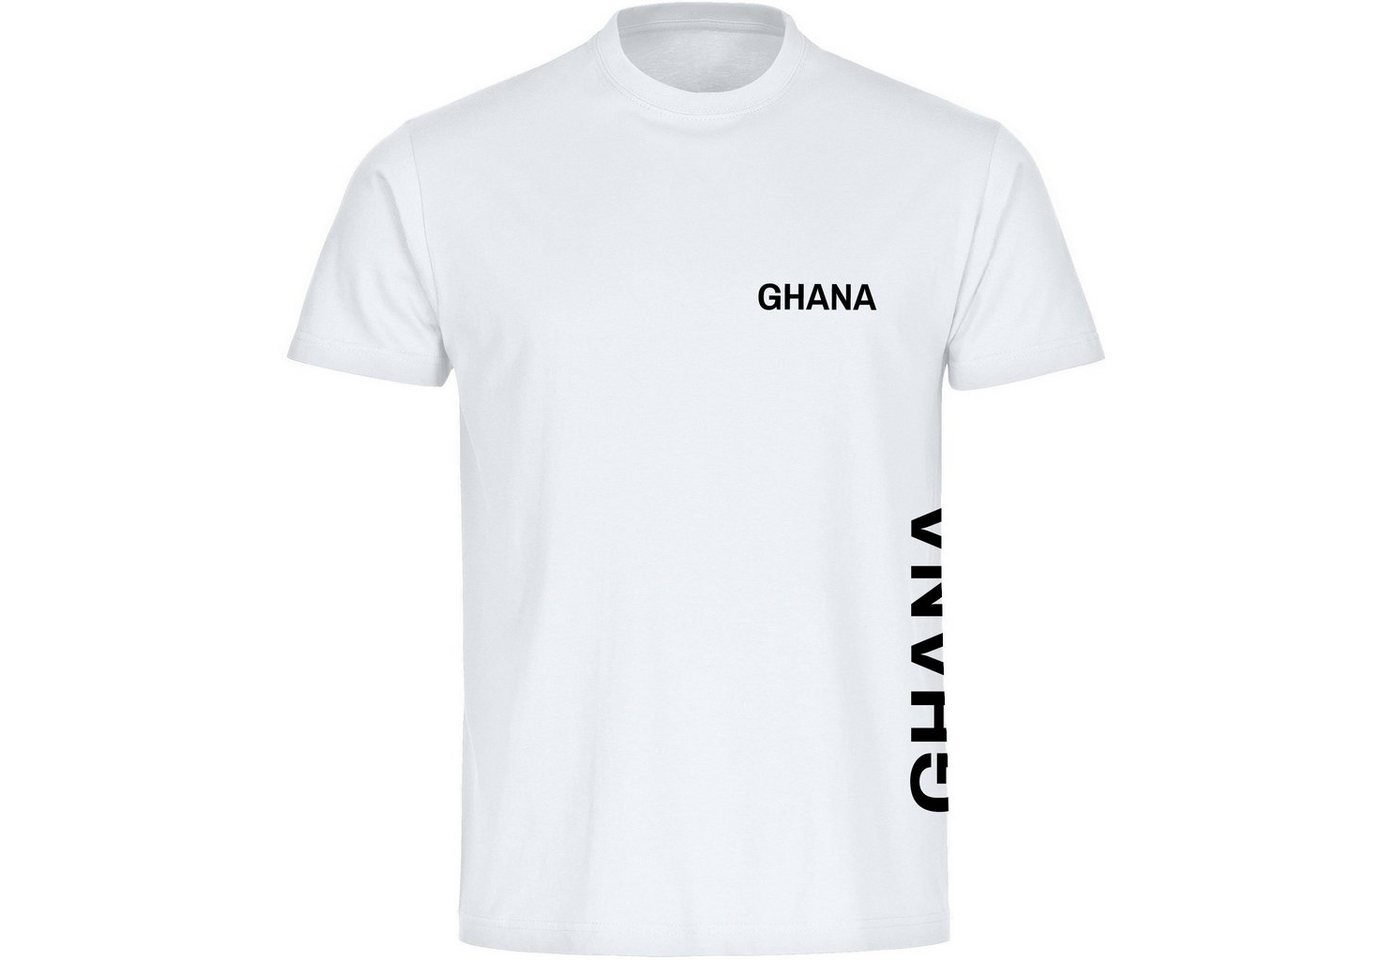 multifanshop T-Shirt Kinder Ghana - Brust & Seite - Boy Girl von multifanshop